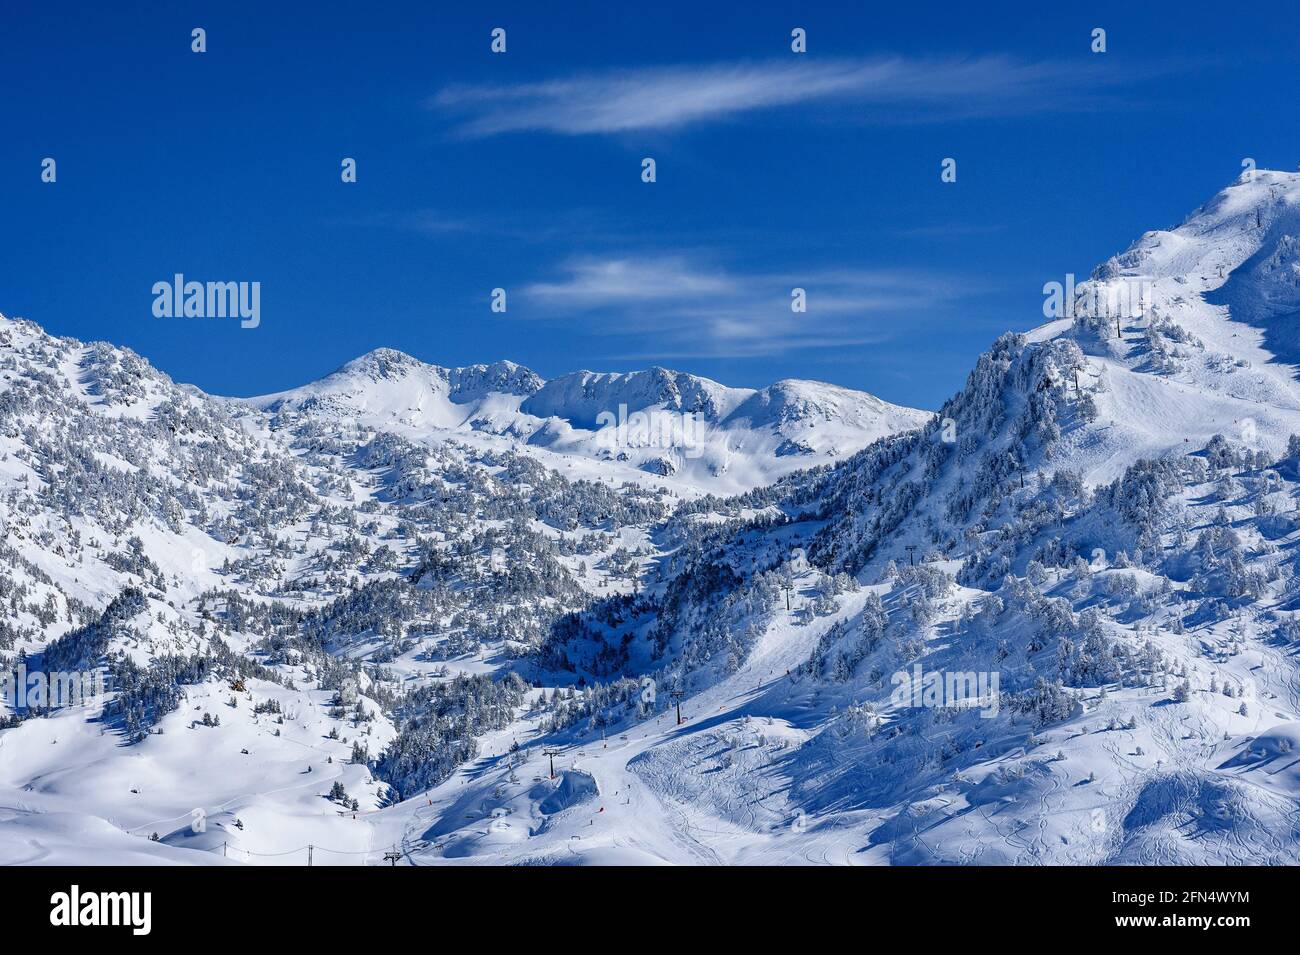 Aran Valley in winter (Pyrenees, Catalonia, Spain) ESP: Valle de Arán en invierno (Pirineos, Cataluña, España) FR: Vallée d'Aran en hiver (Pyrénées) Stock Photo